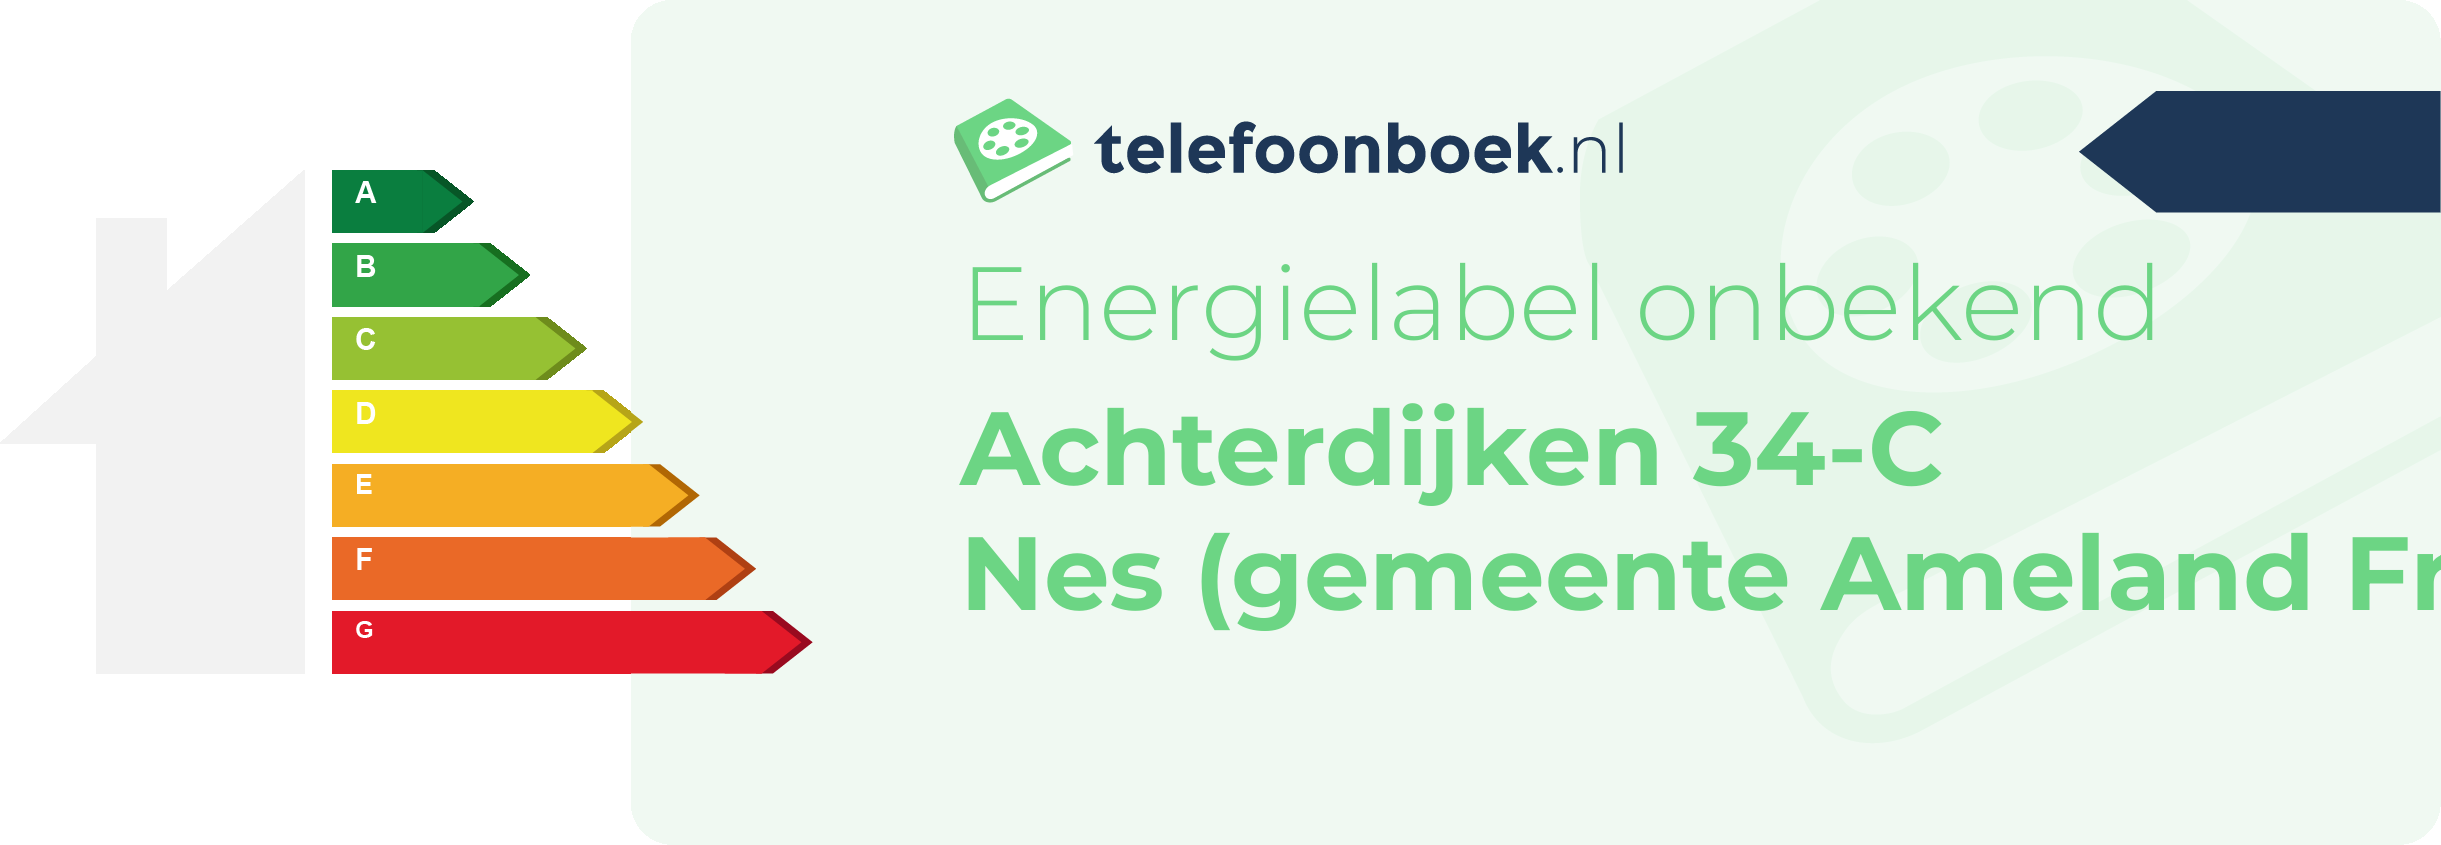 Energielabel Achterdijken 34-C Nes (gemeente Ameland Friesland)